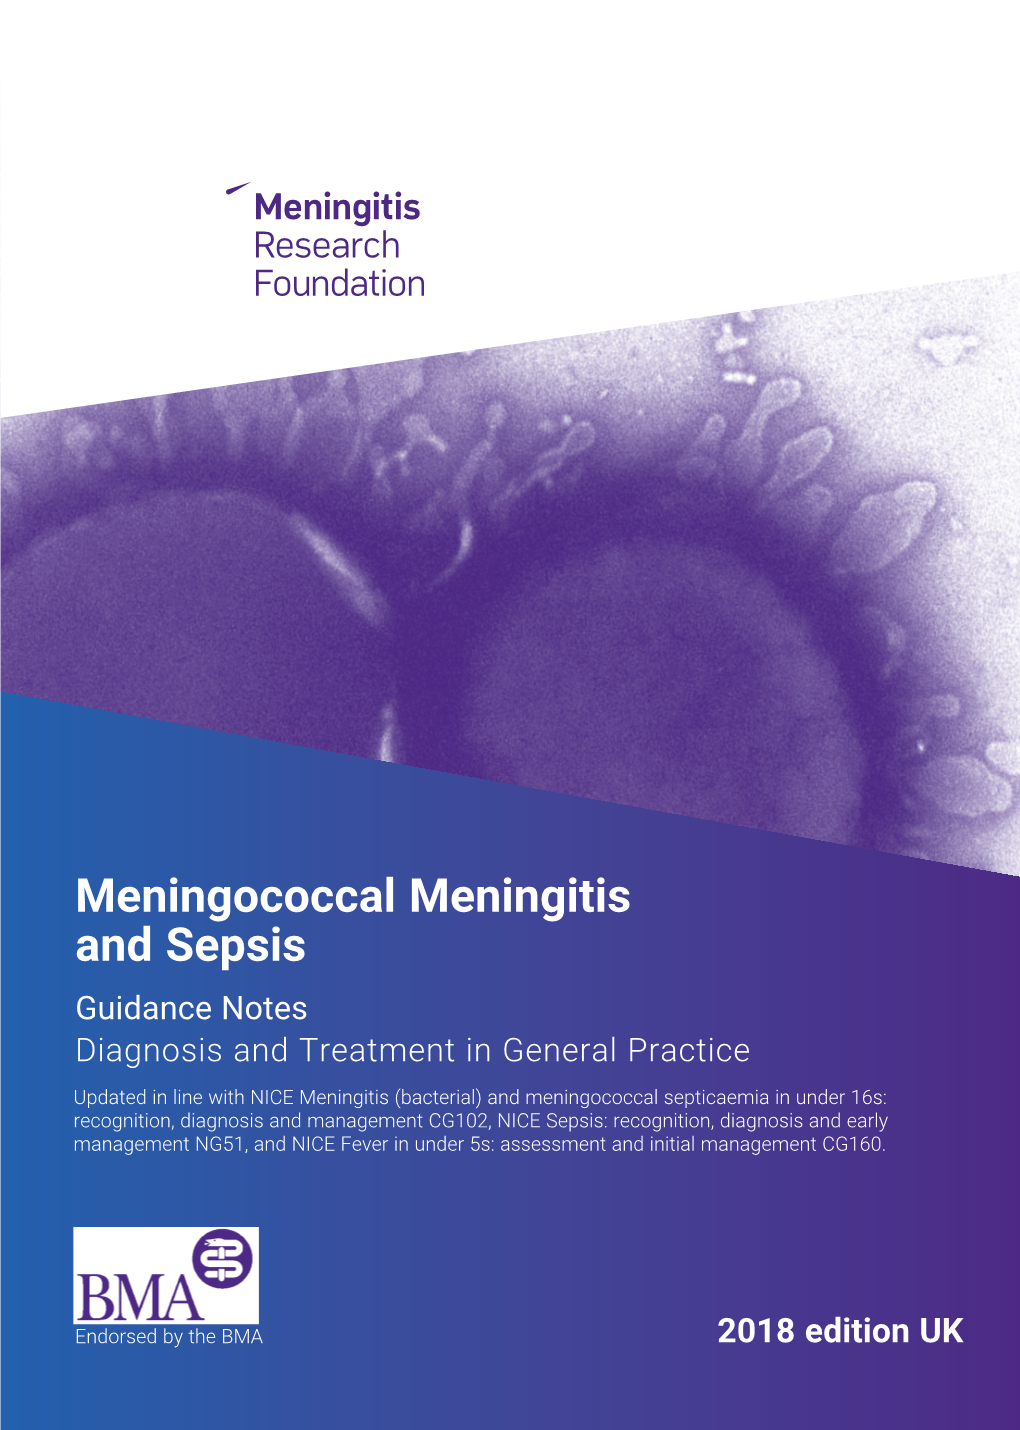 Meningococcal Meningitis and Sepsis